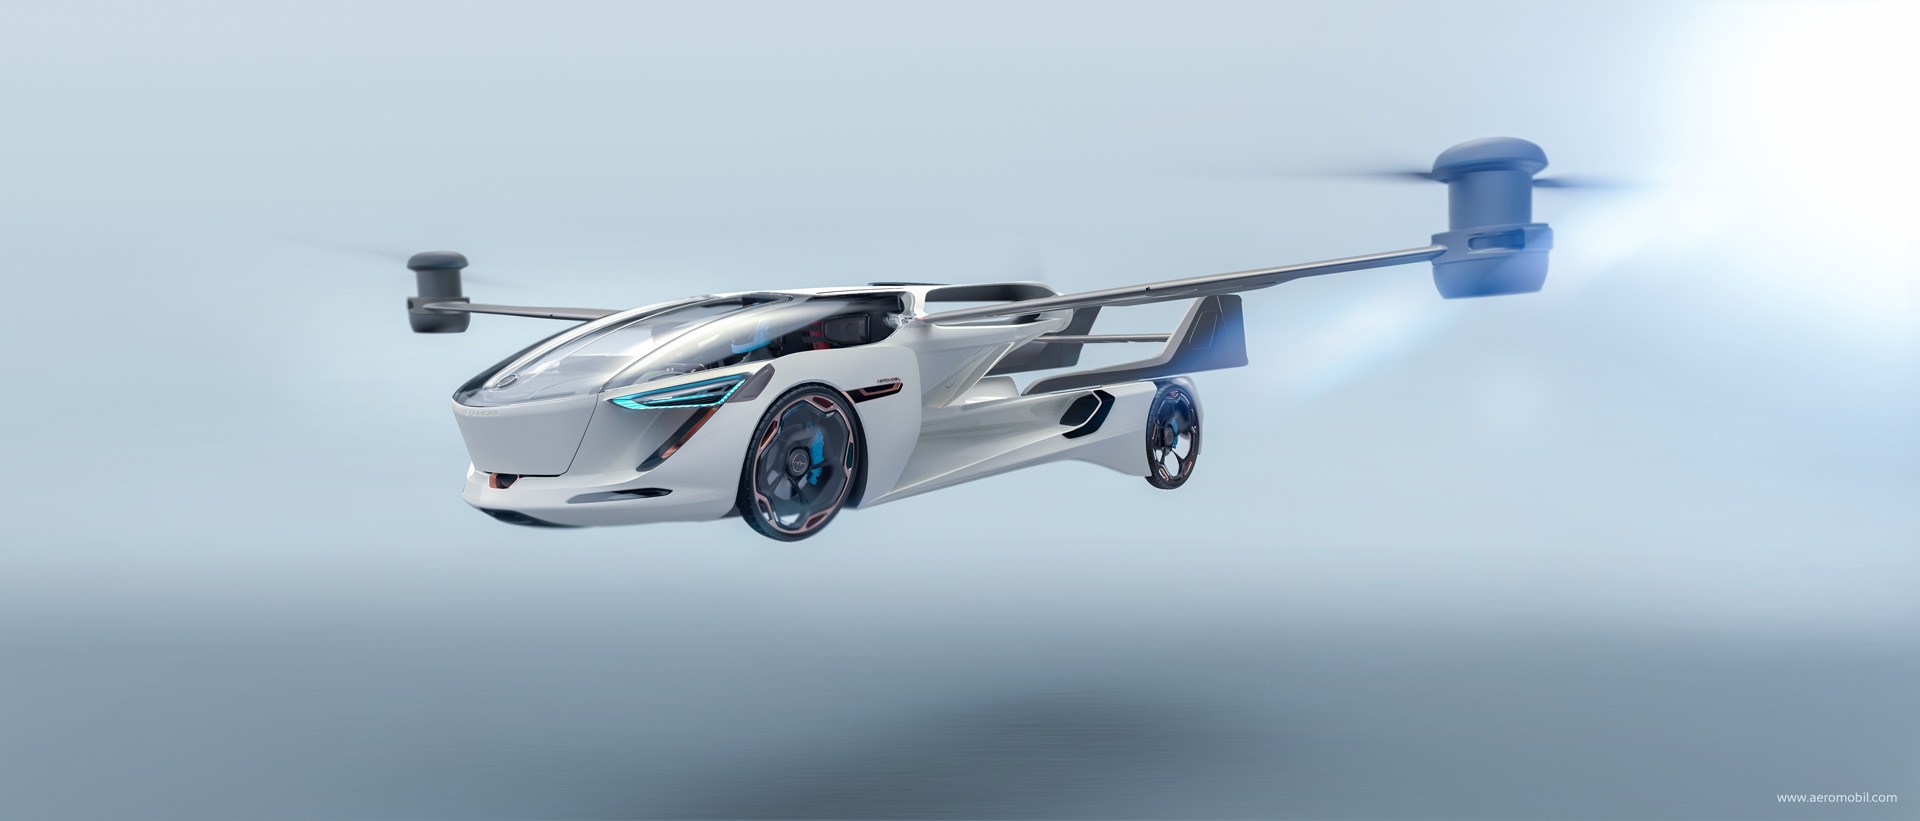 السيارة الطائرة إيروموبيل VTOL 5.0 تكشف نفسها من المستقبل 11